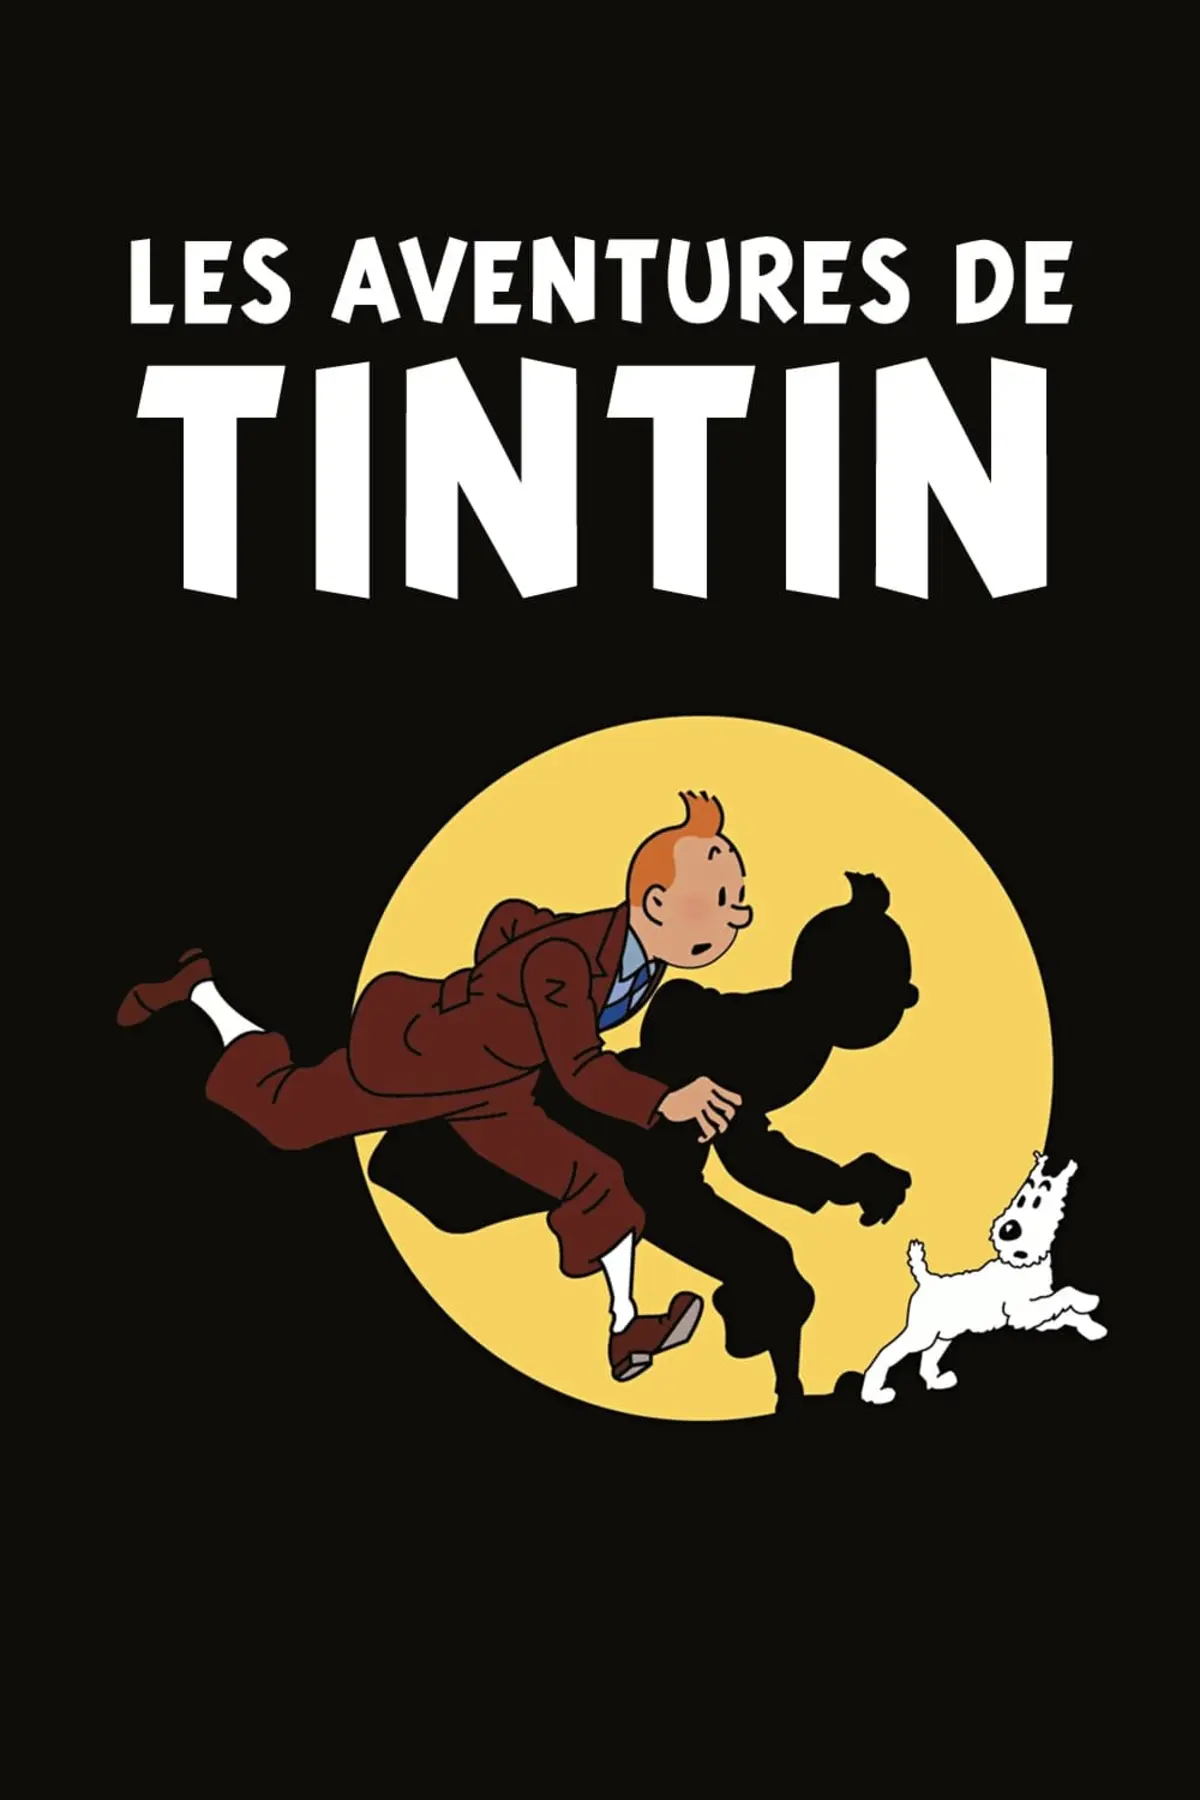 Les aventures de Tintin S01E14 Episode 14